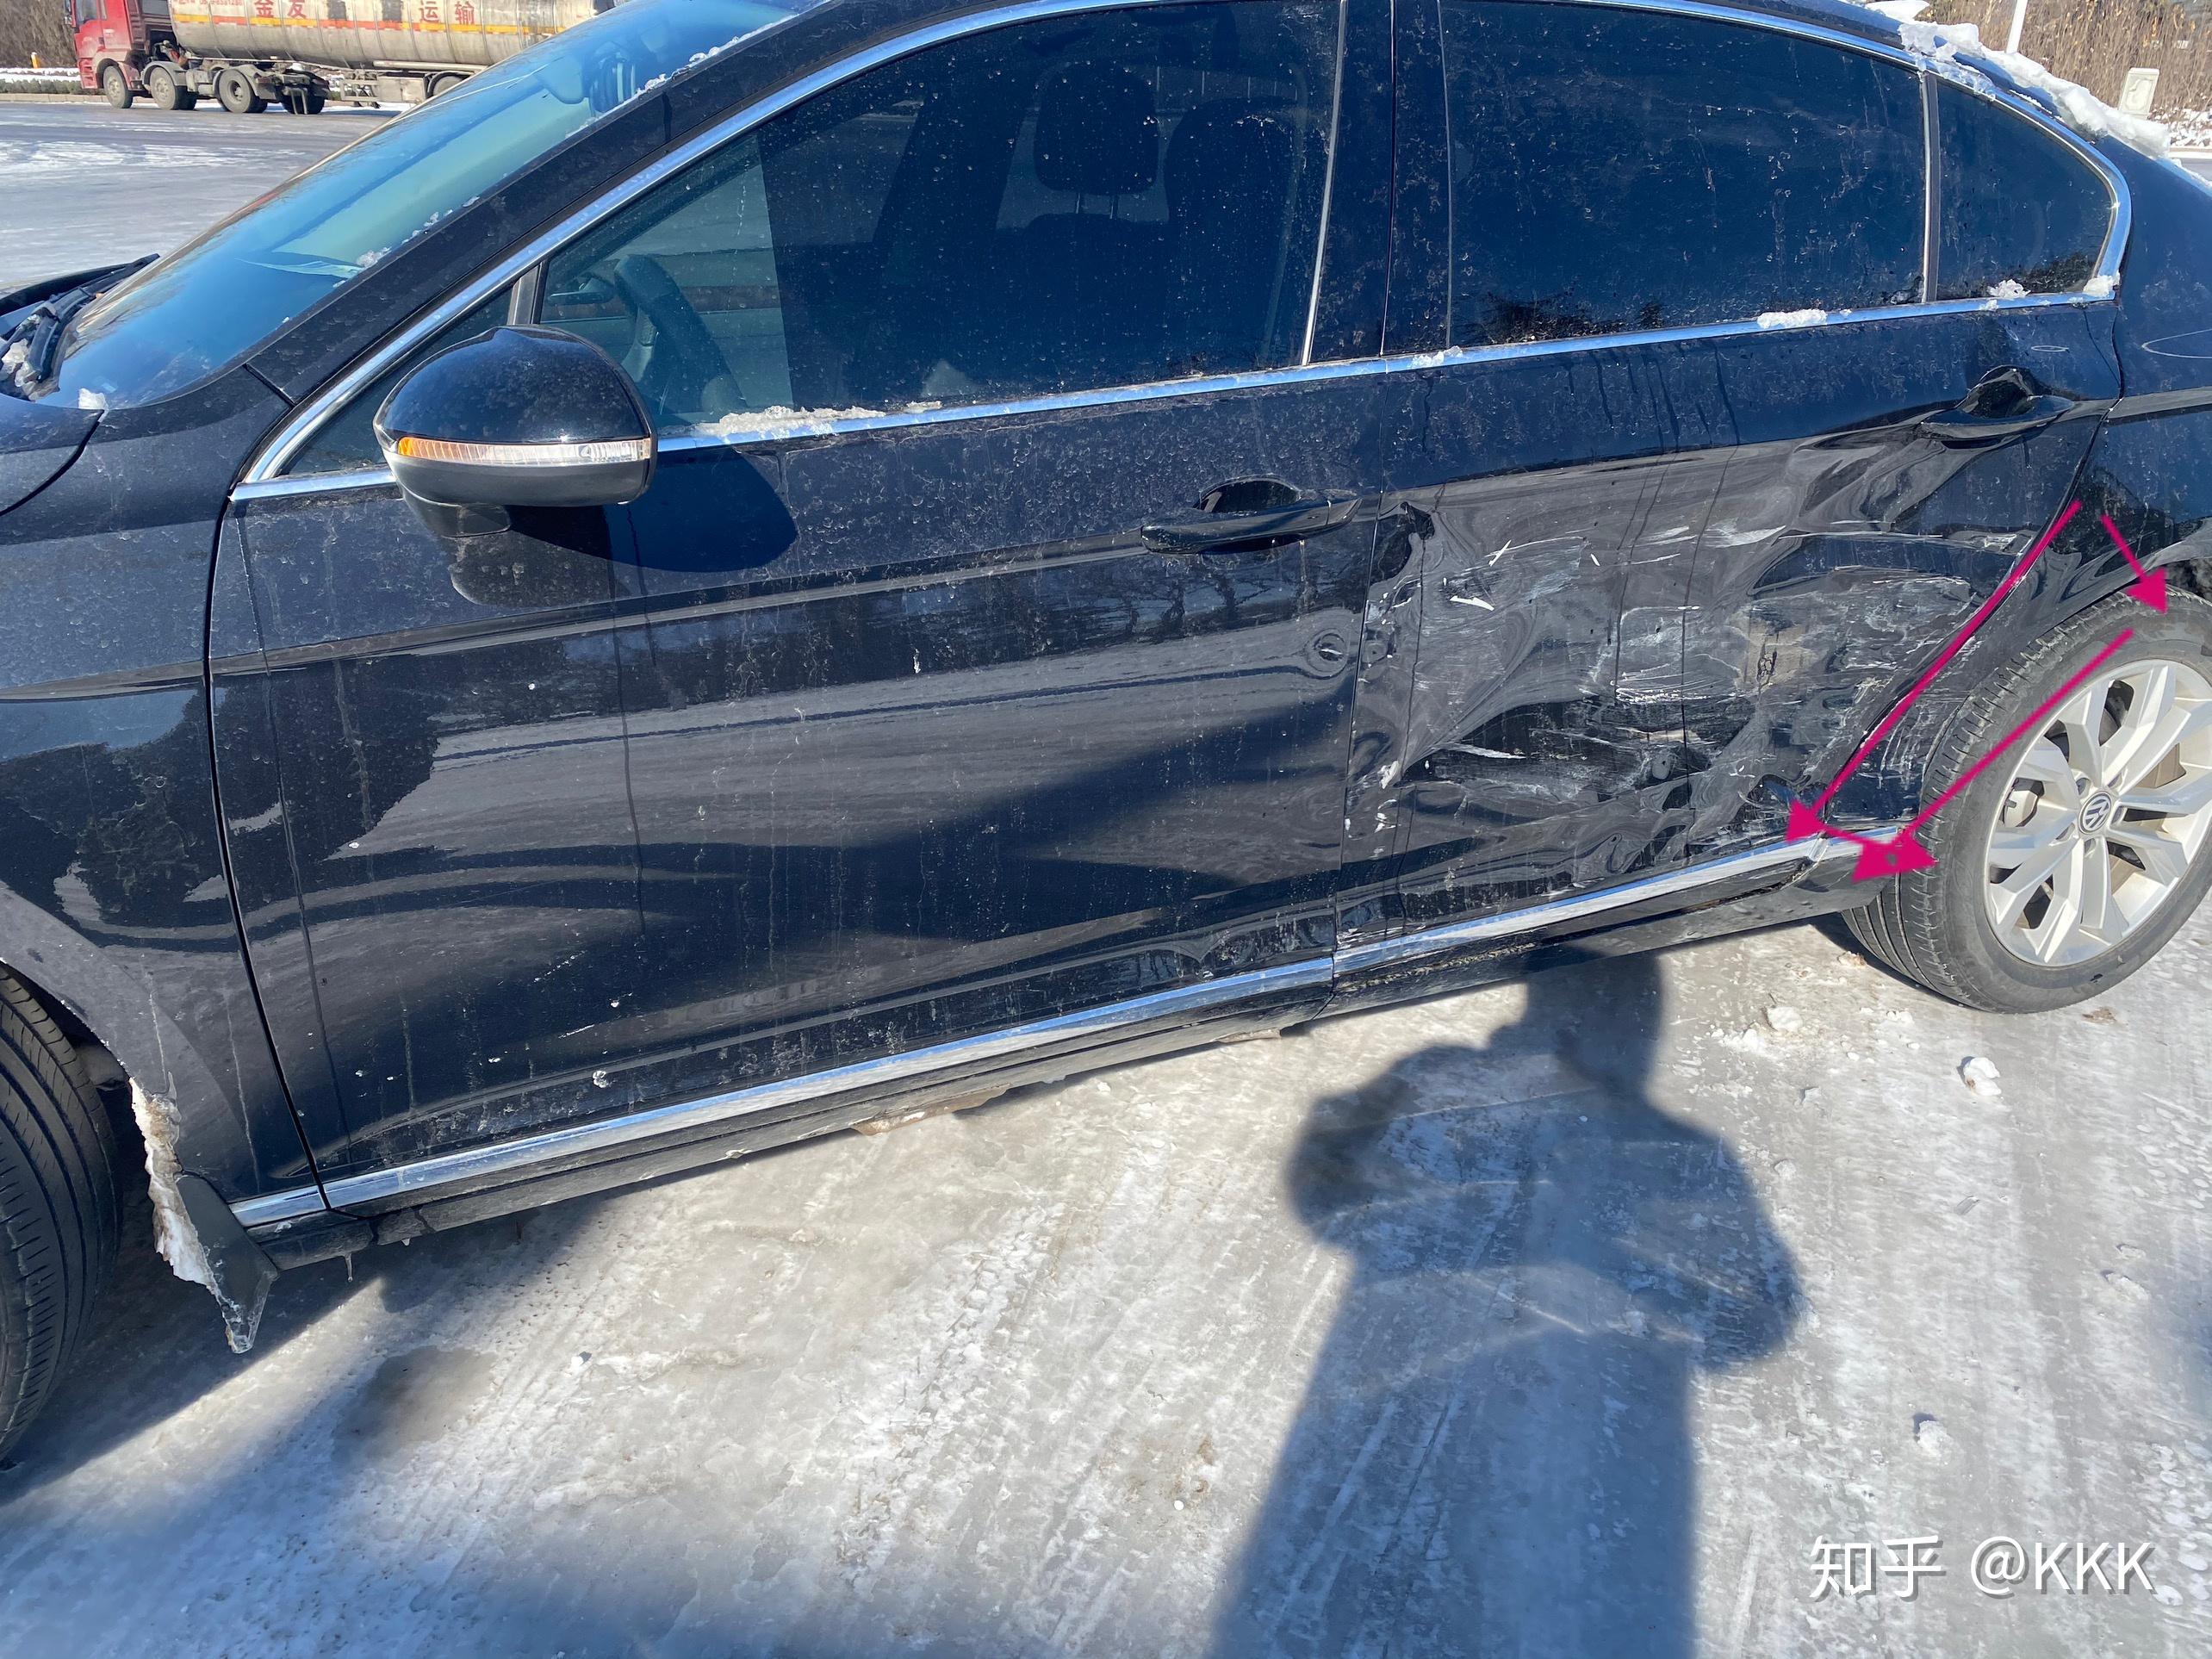 车被撞了后翼子板这是修复好,还是切割,有什么影响,4s店建议切割?